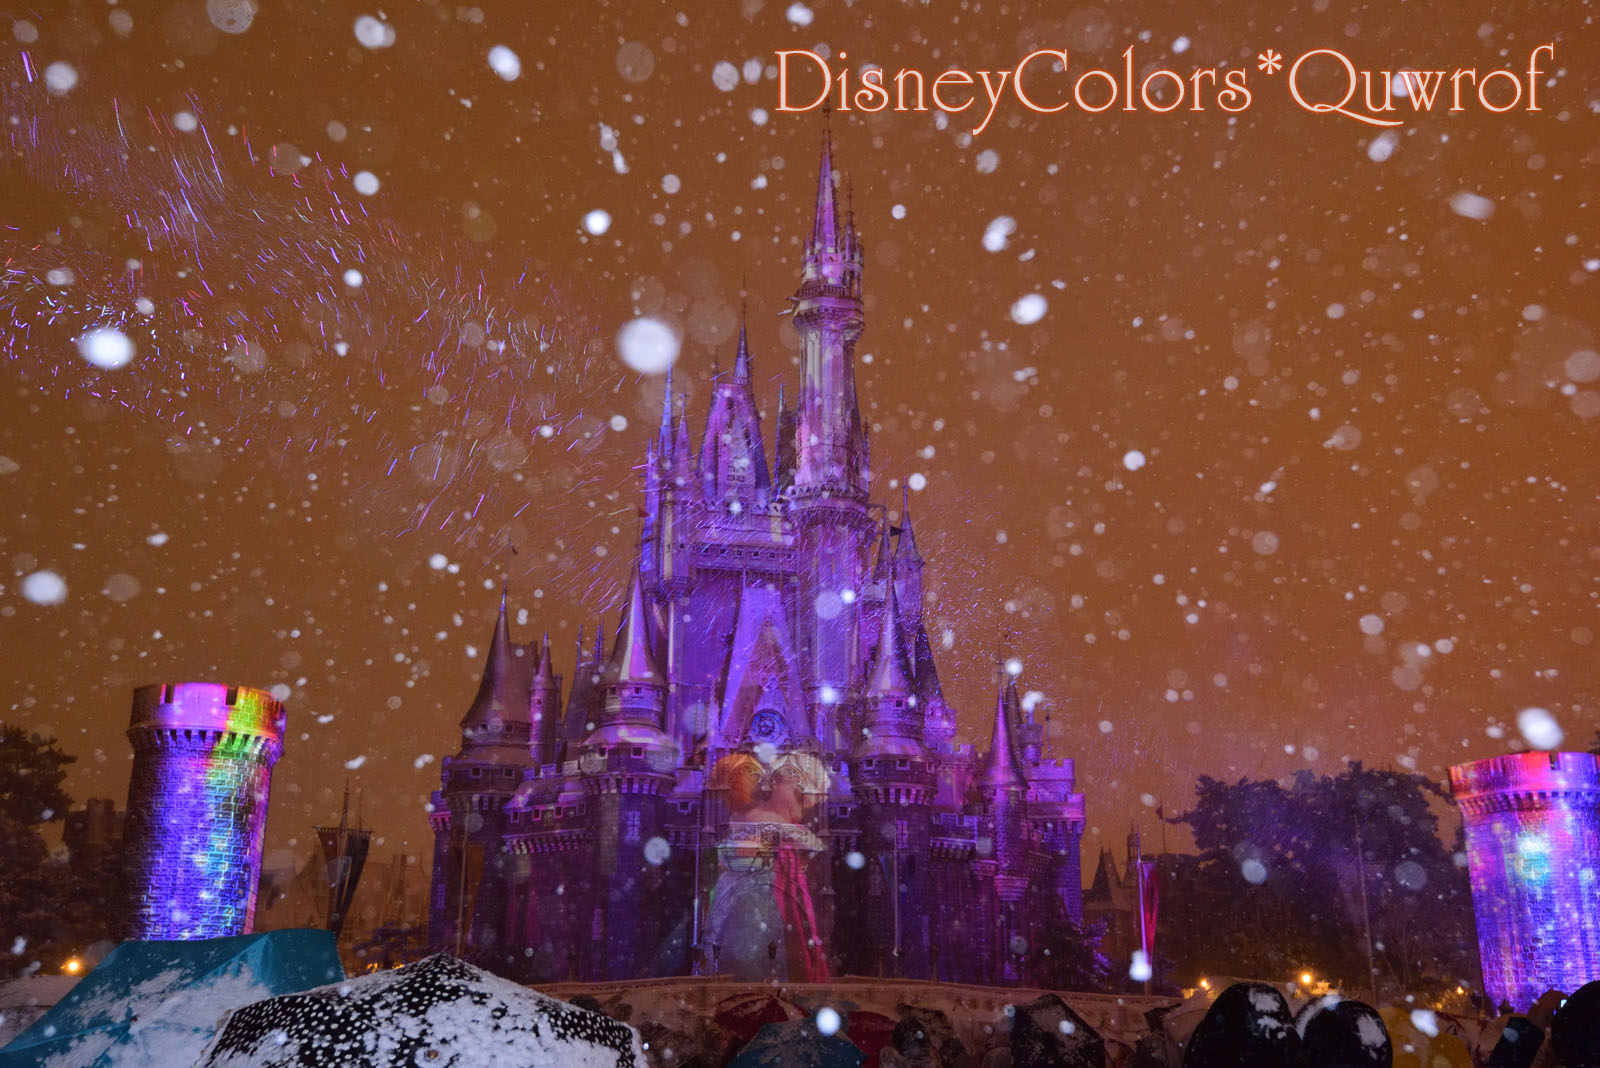 雪と光が幻想的な夜のディズニーランドへ 18年1月22日のパークレポート Disney Colors Blog